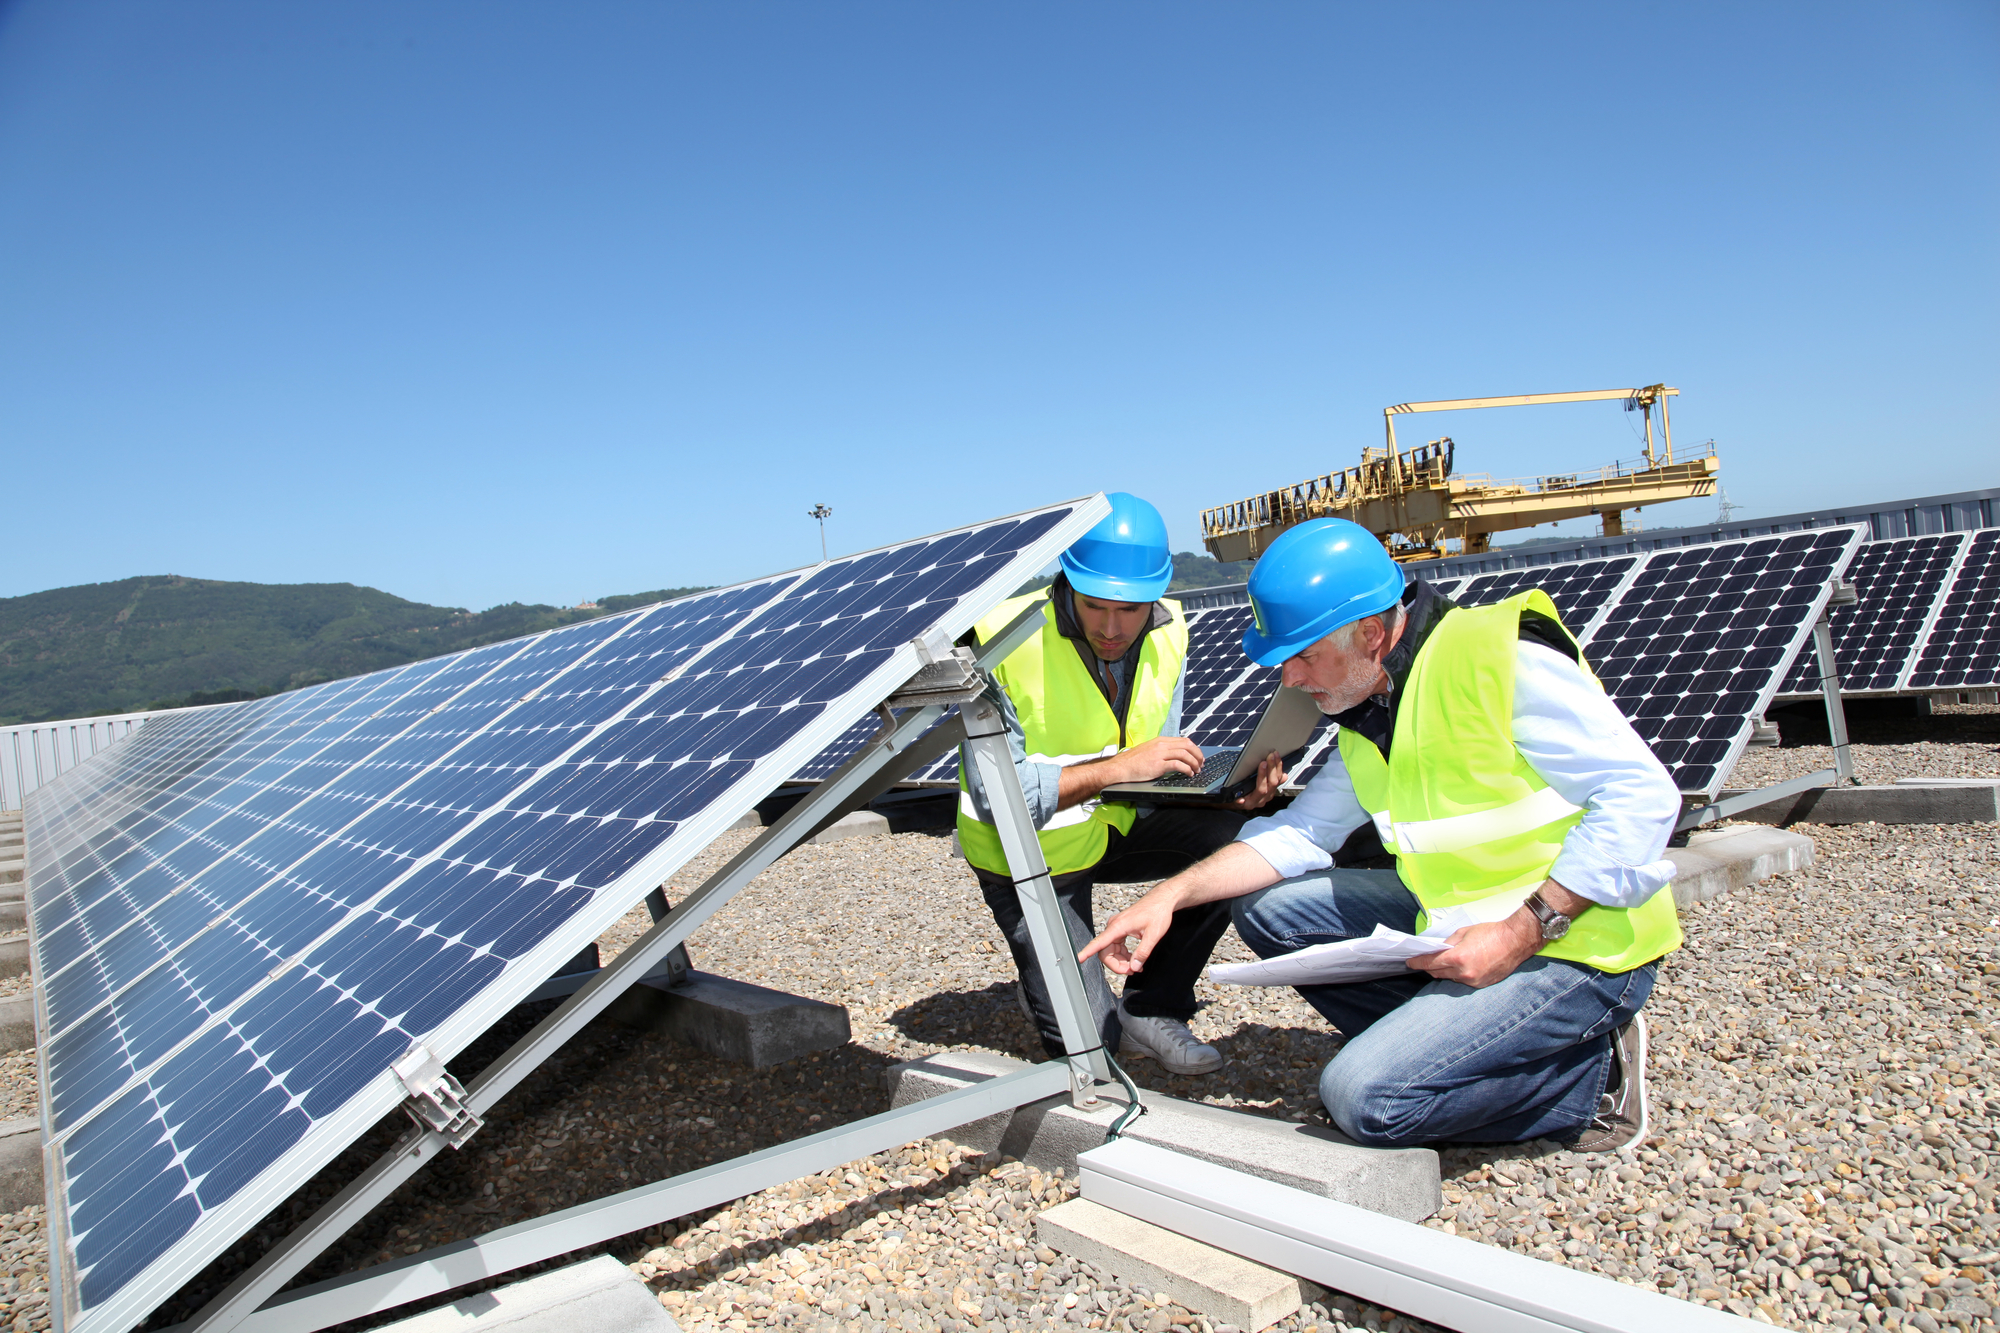 Jau paskelbtas kvietimas mažoms įmonėms saulės elektrinių iki 500 kW įrengimo finansavimui gauti (pasibaigęs)